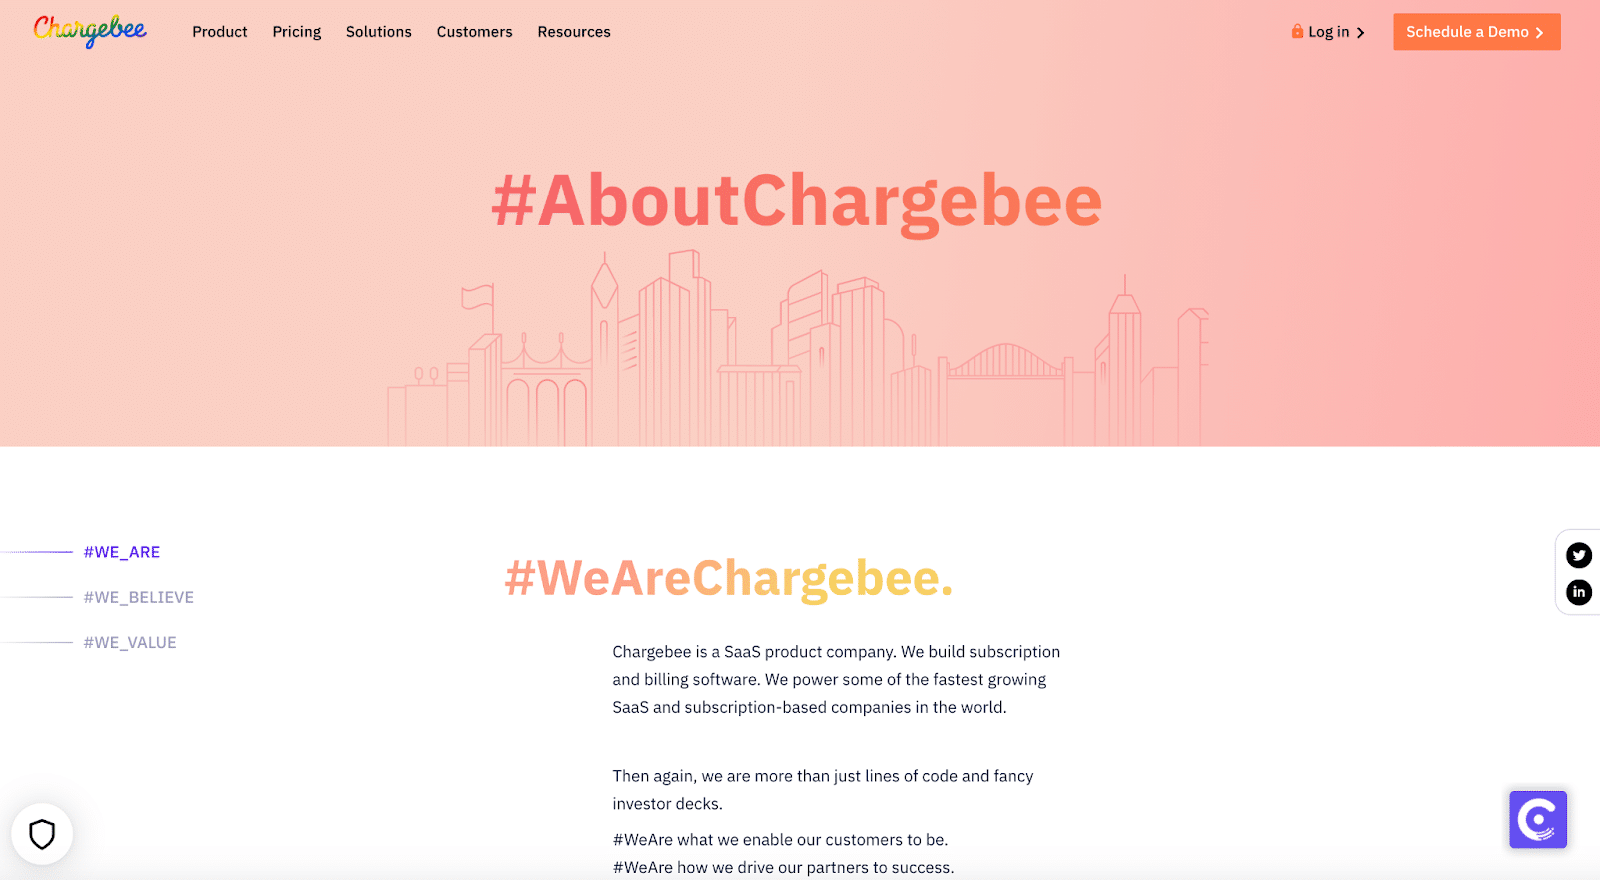 Die Seite "Über uns" von Chargbee ist ein wesentlicher Bestandteil der Webseite.